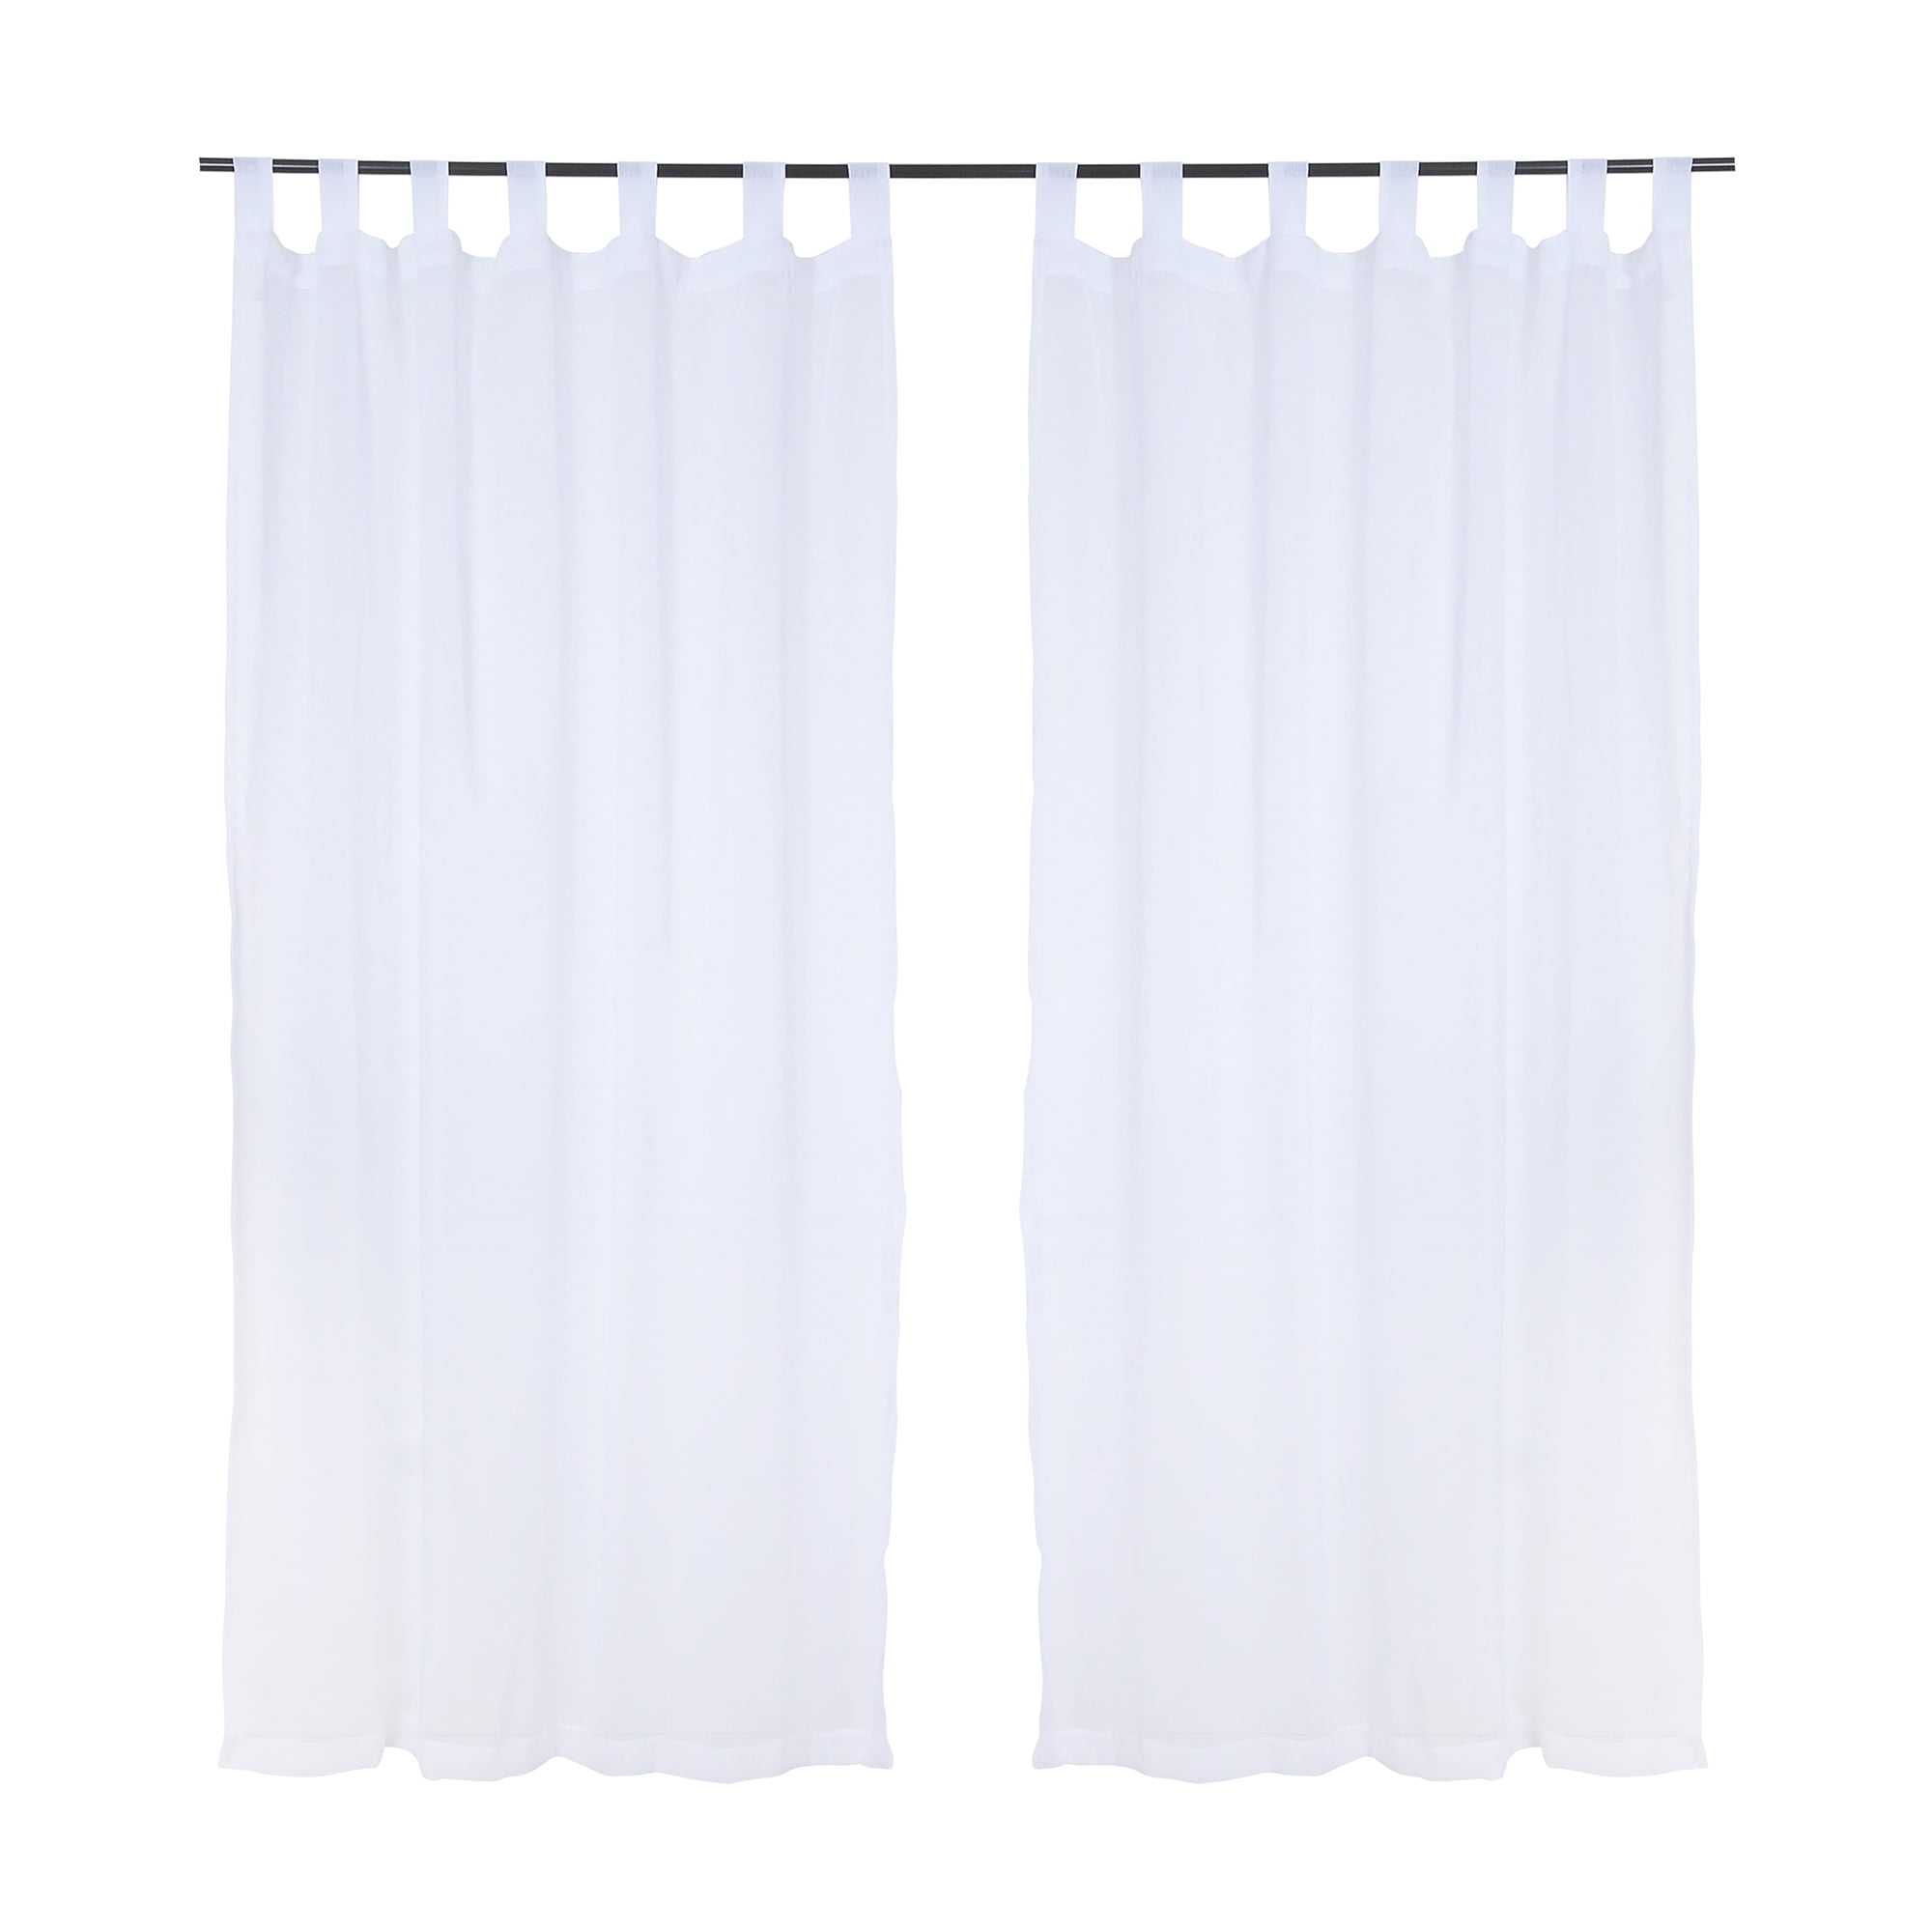 Mashini - Las cortinas de Mashini son una alternativa ideal para